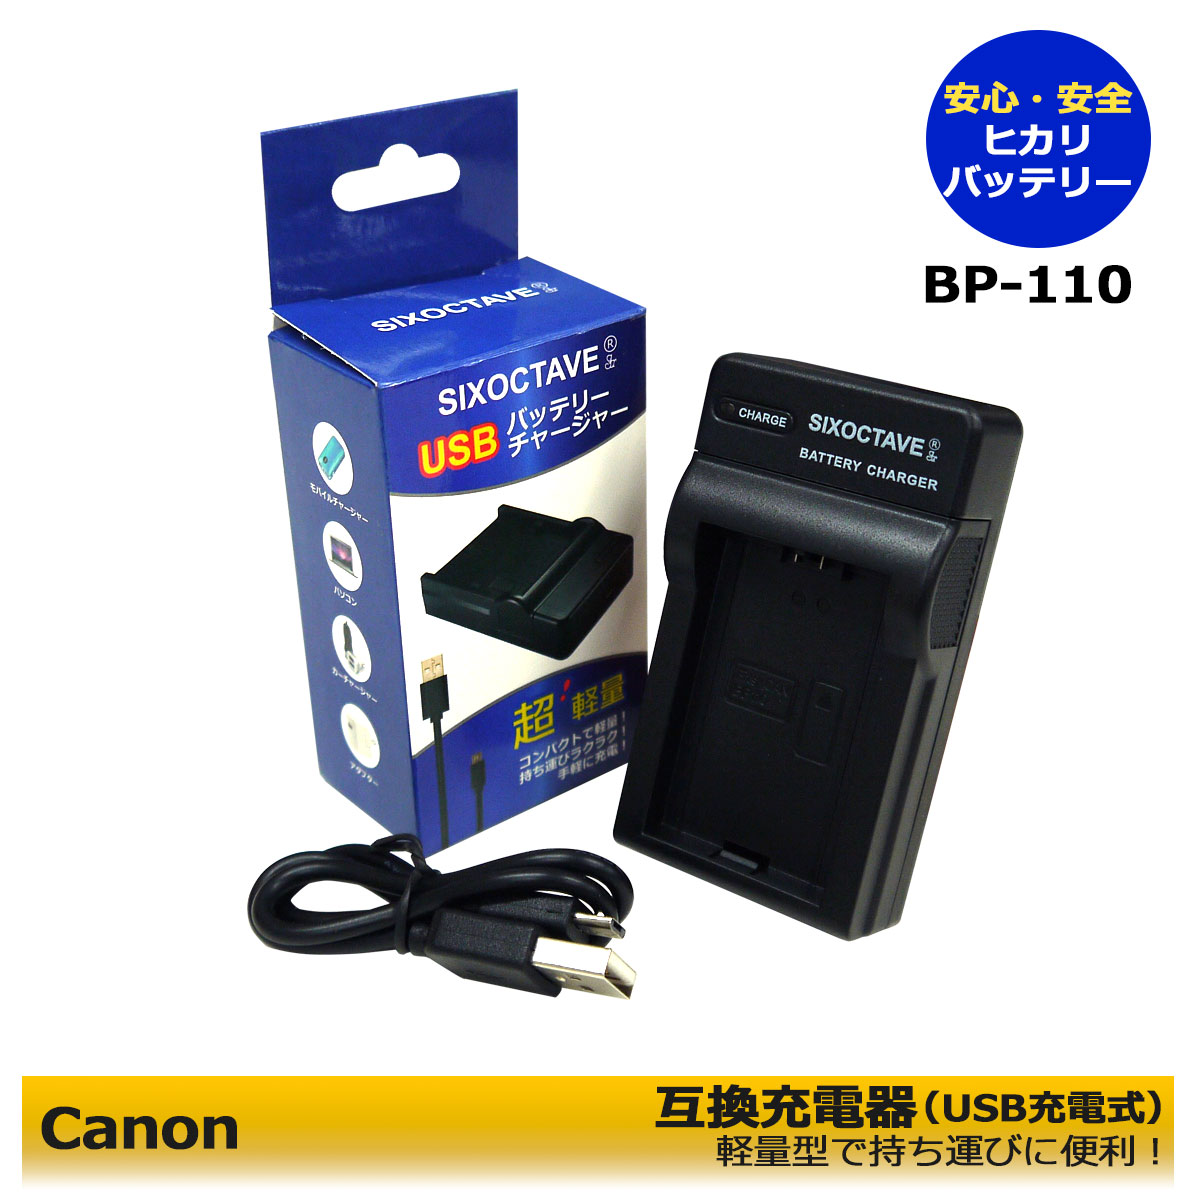 送料無料 Canon BP-110 バッテリー 互換 USB充電器 CG-110 対応可能。LEGRIA HF R205 / LEGRIA HF R206 / LEGRIA HF R26 / LEGRIA HF R27 / LEGRIA HF R28 iVIS HF R26 / iVIS HF R28 / iVIS HF R200/ iVIS HF R206 純正品にも対応